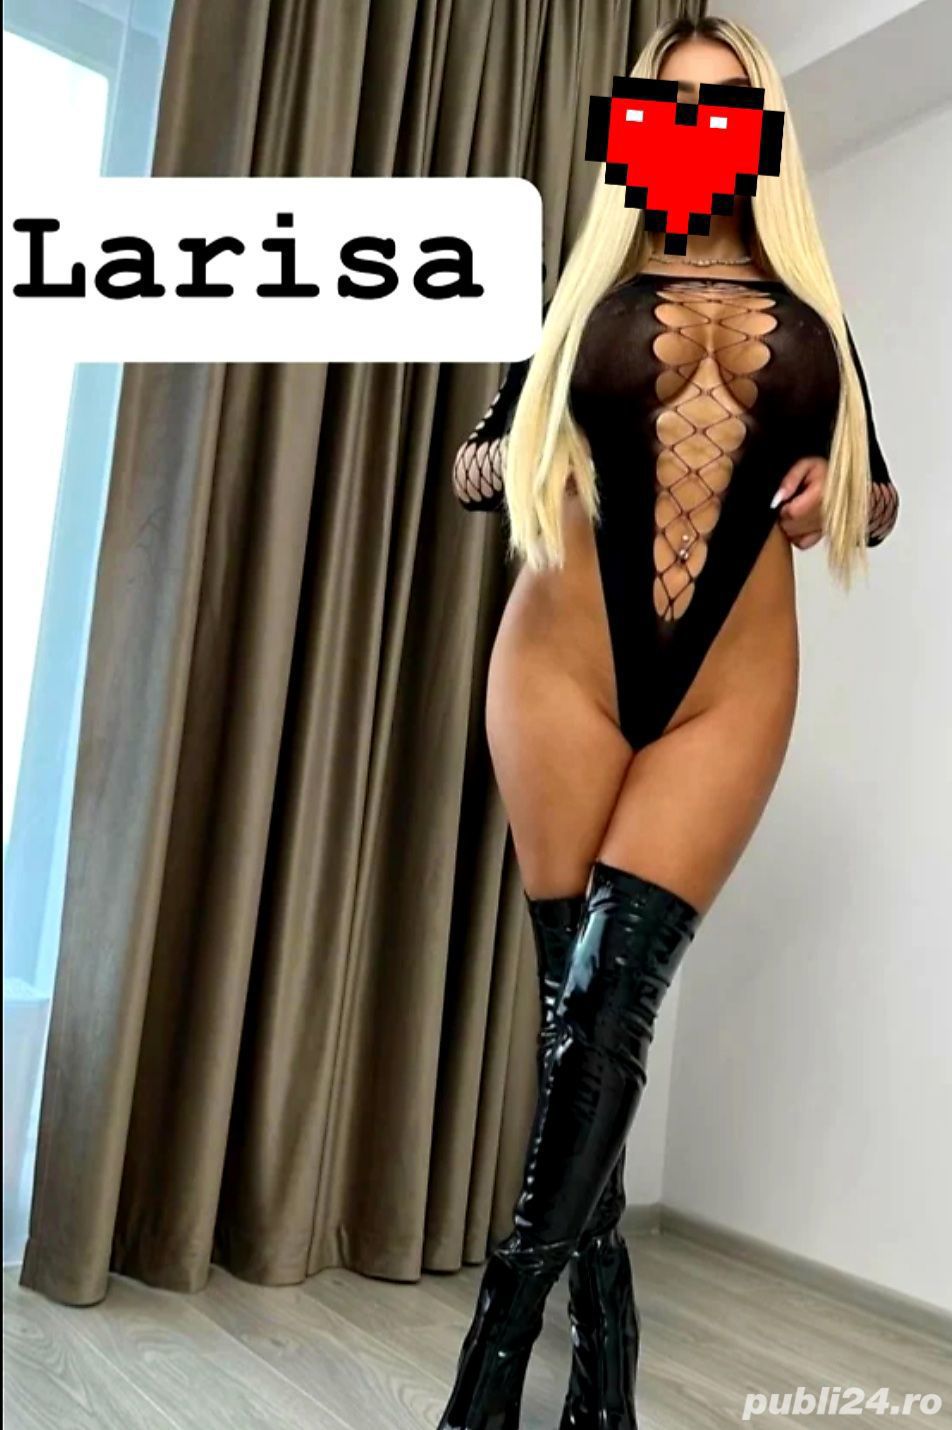 Escorta de lux Larissa  - imagine 1